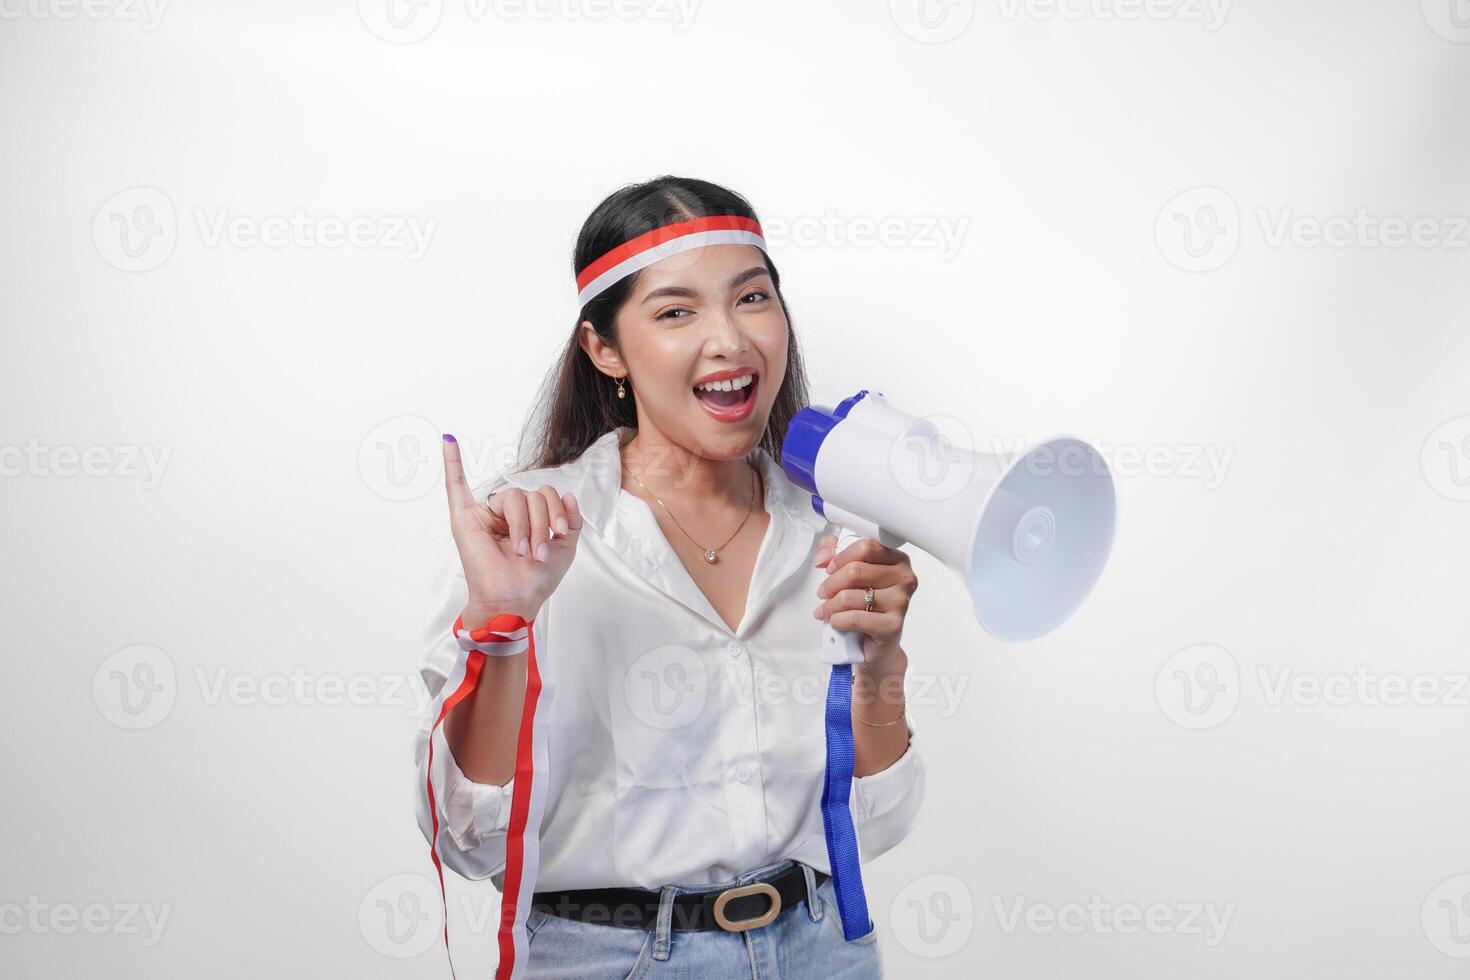 energético indonesio mujer en casual formal atuendo vistiendo país bandera venda mientras participación y gritos a megáfono, con orgullo demostración pequeño dedo sumergido en púrpura tinta después votación para elección foto